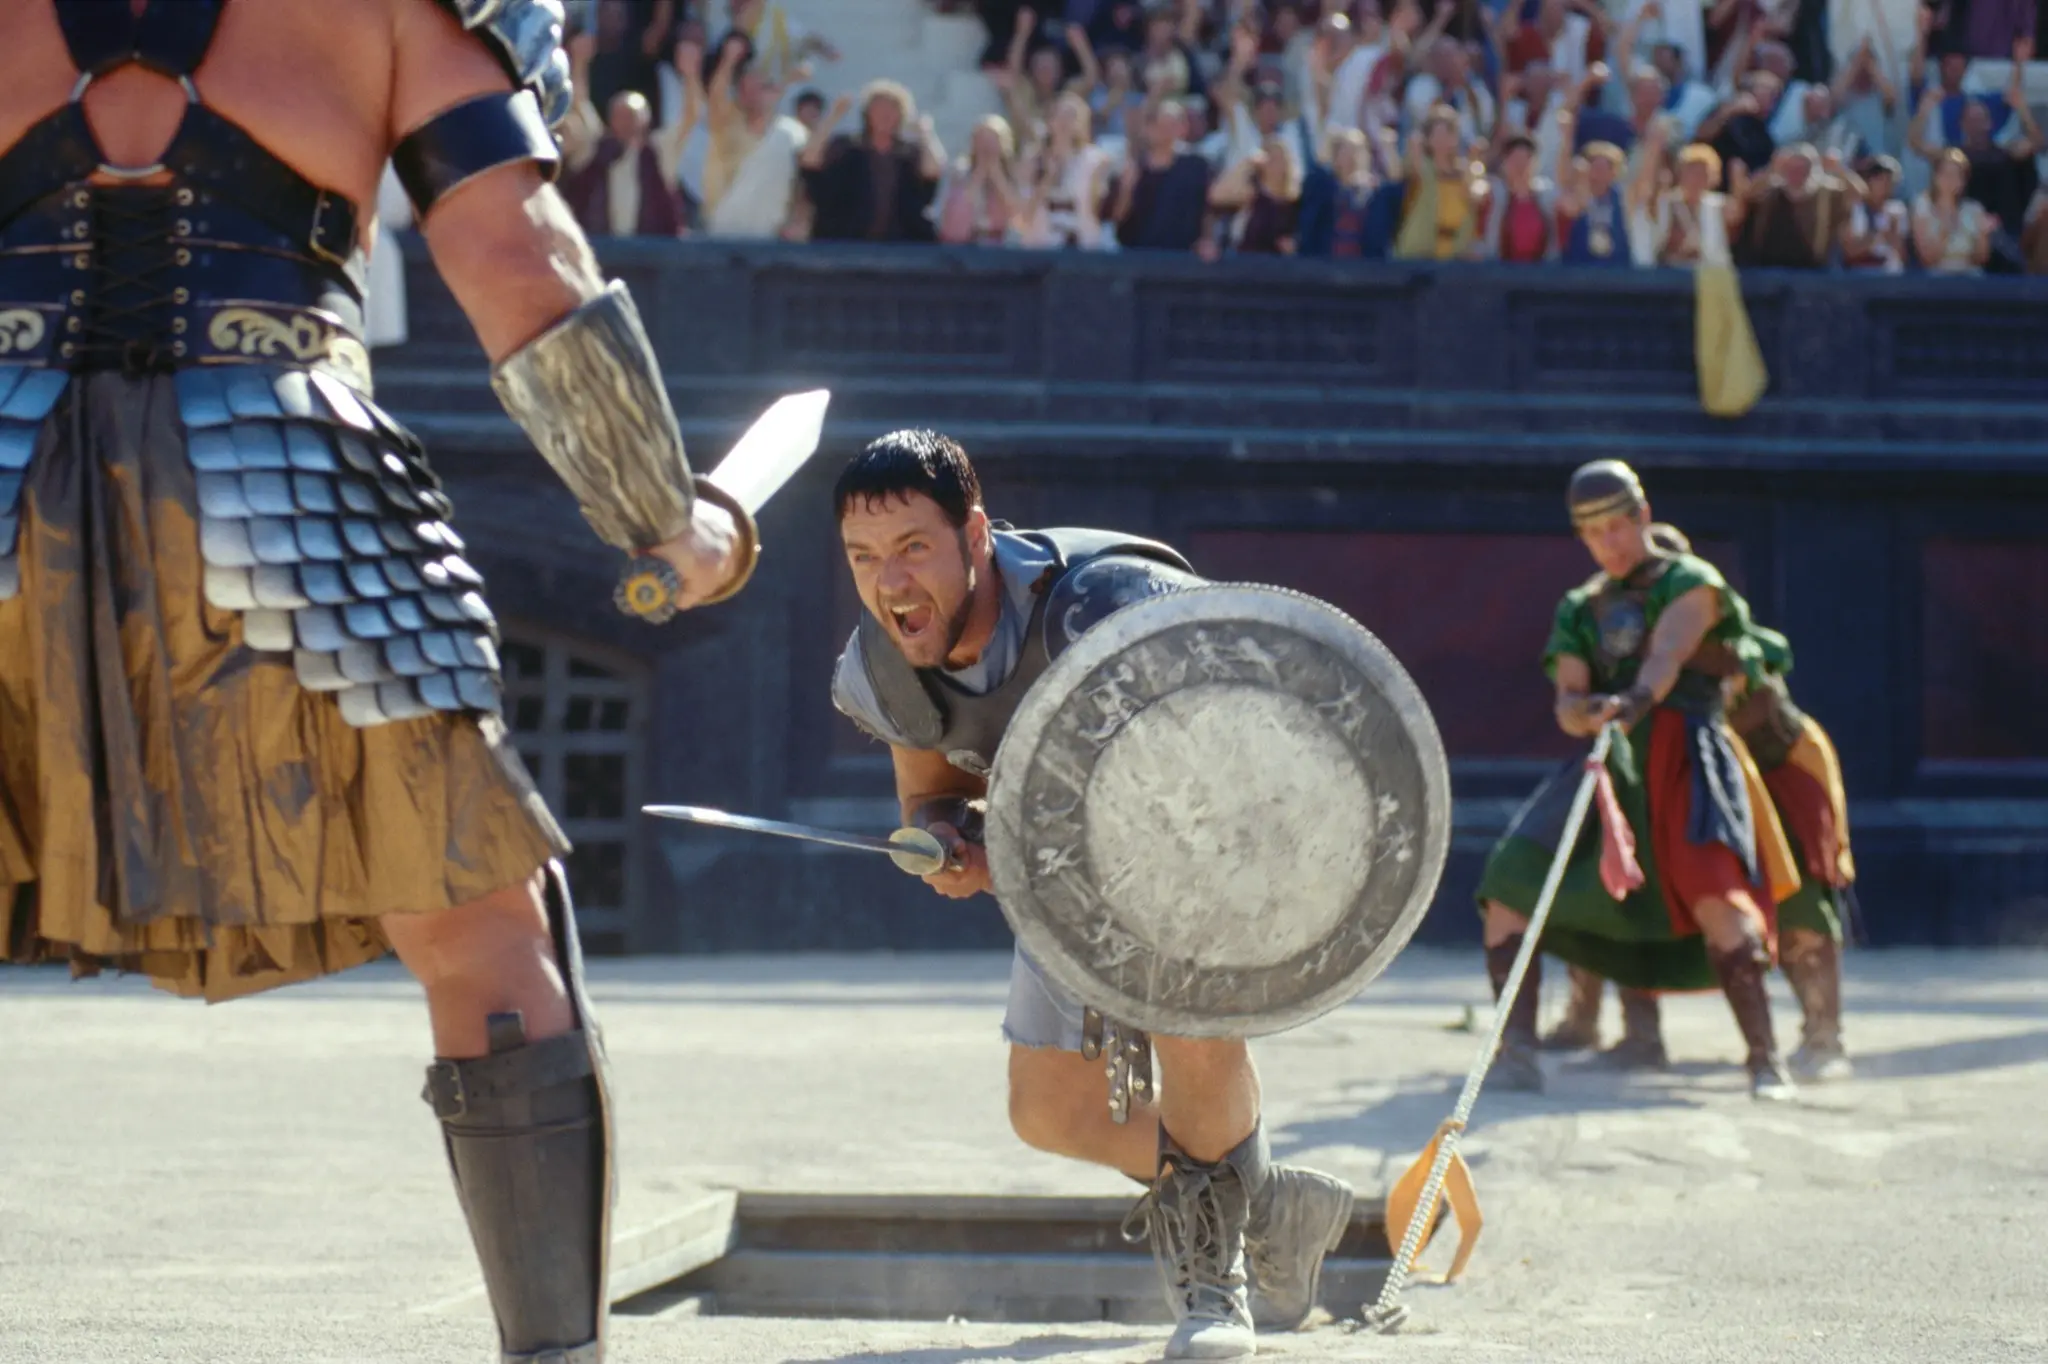 Gladiátor 2 vypadá na prvních fotkách fantasticky. Příběh vyjeví obludnost římského impéria